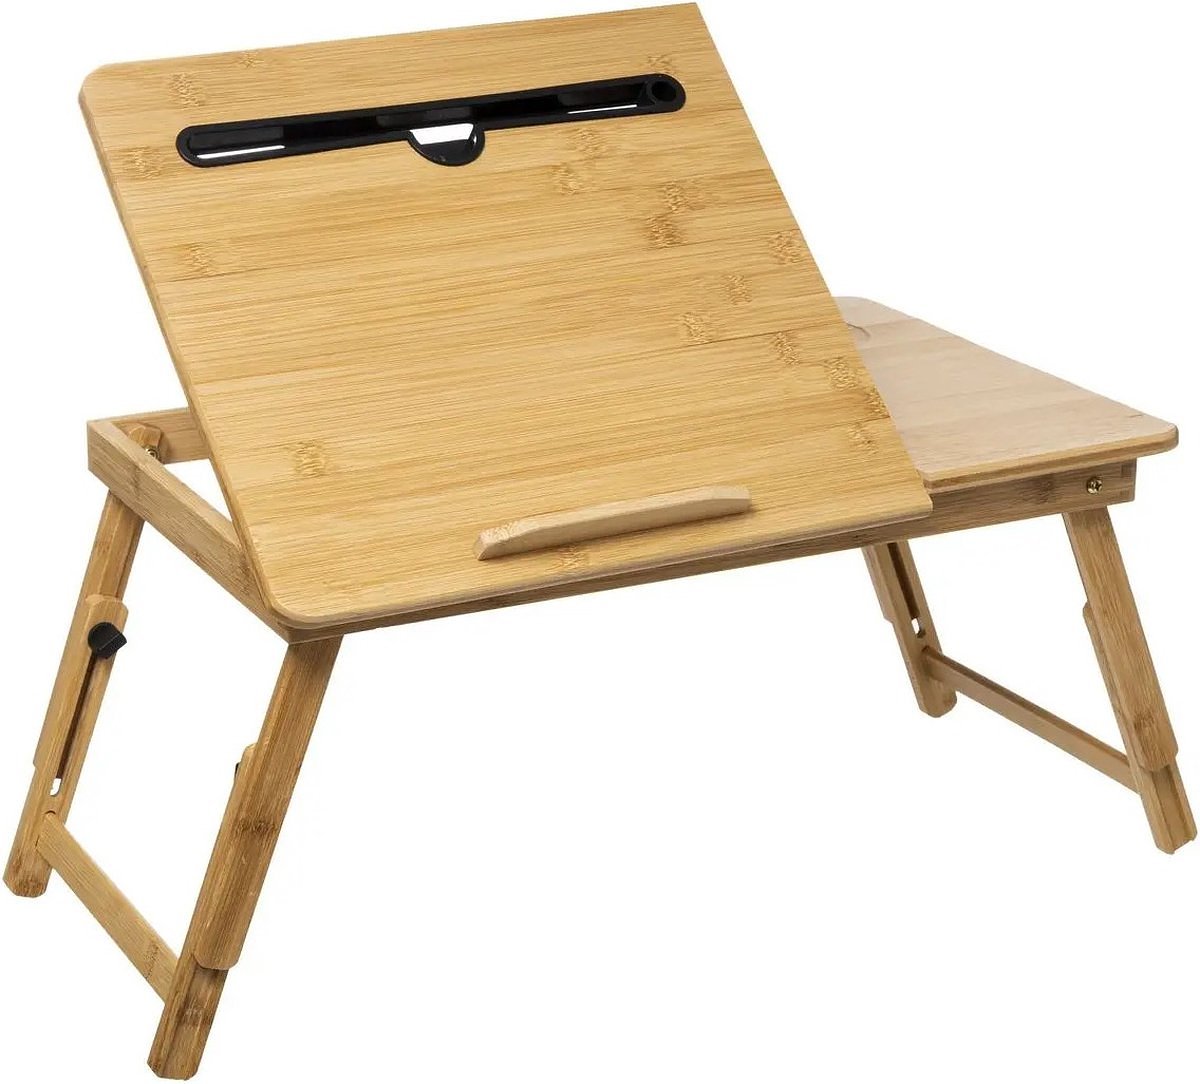 Bamboe smart tray / tafeltje 54 x 34 cm 2 IN 1 Bedtafel/ Laptopstandaard - Nieuw Model - Cadeautip -